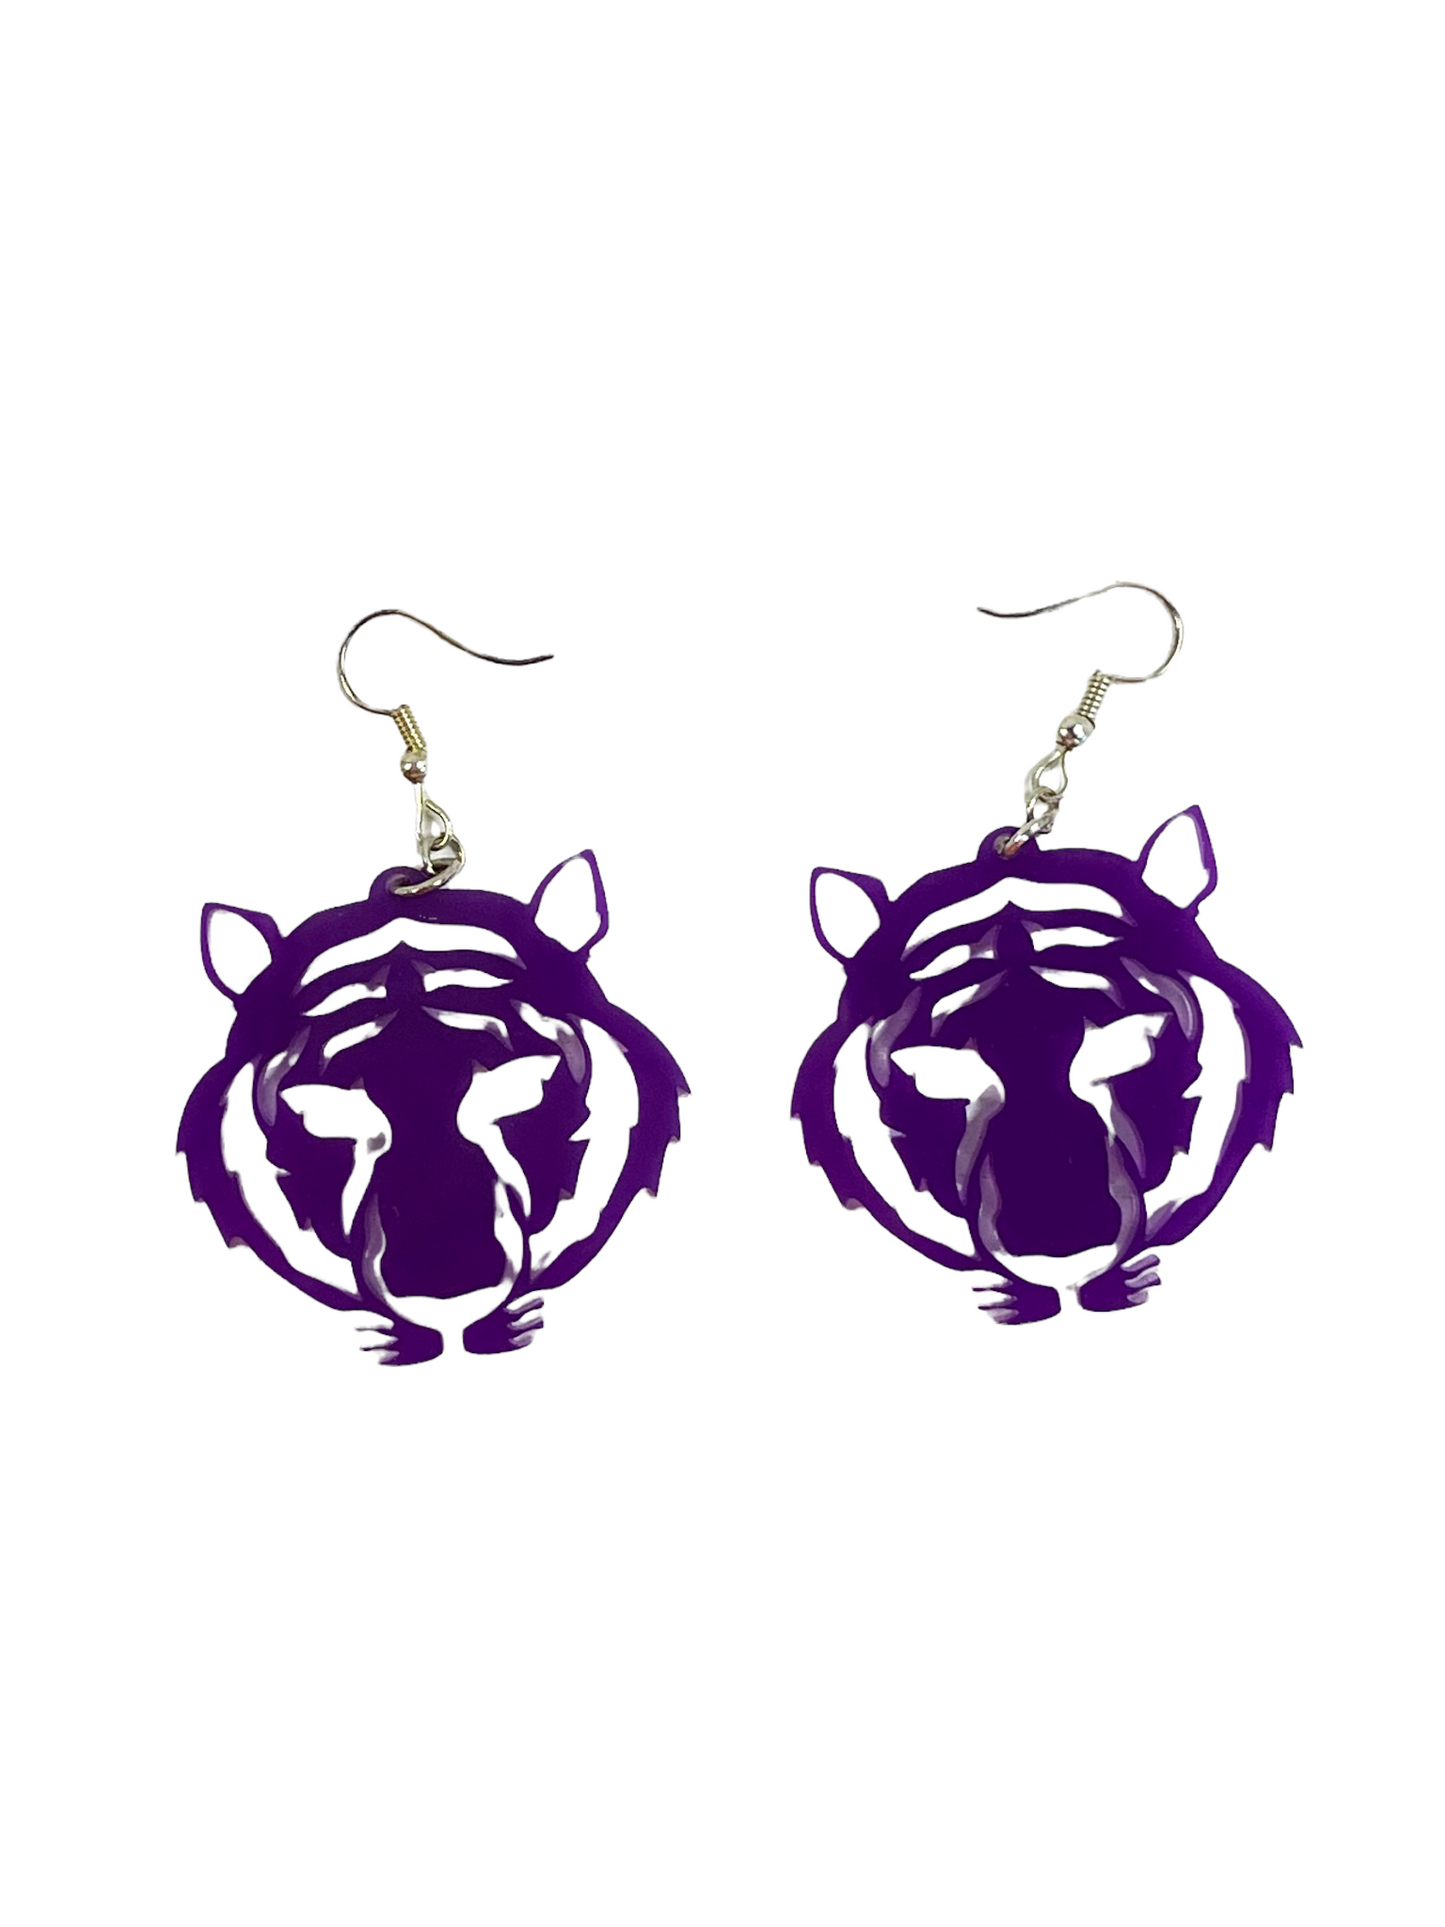 LSU tiger face earrings